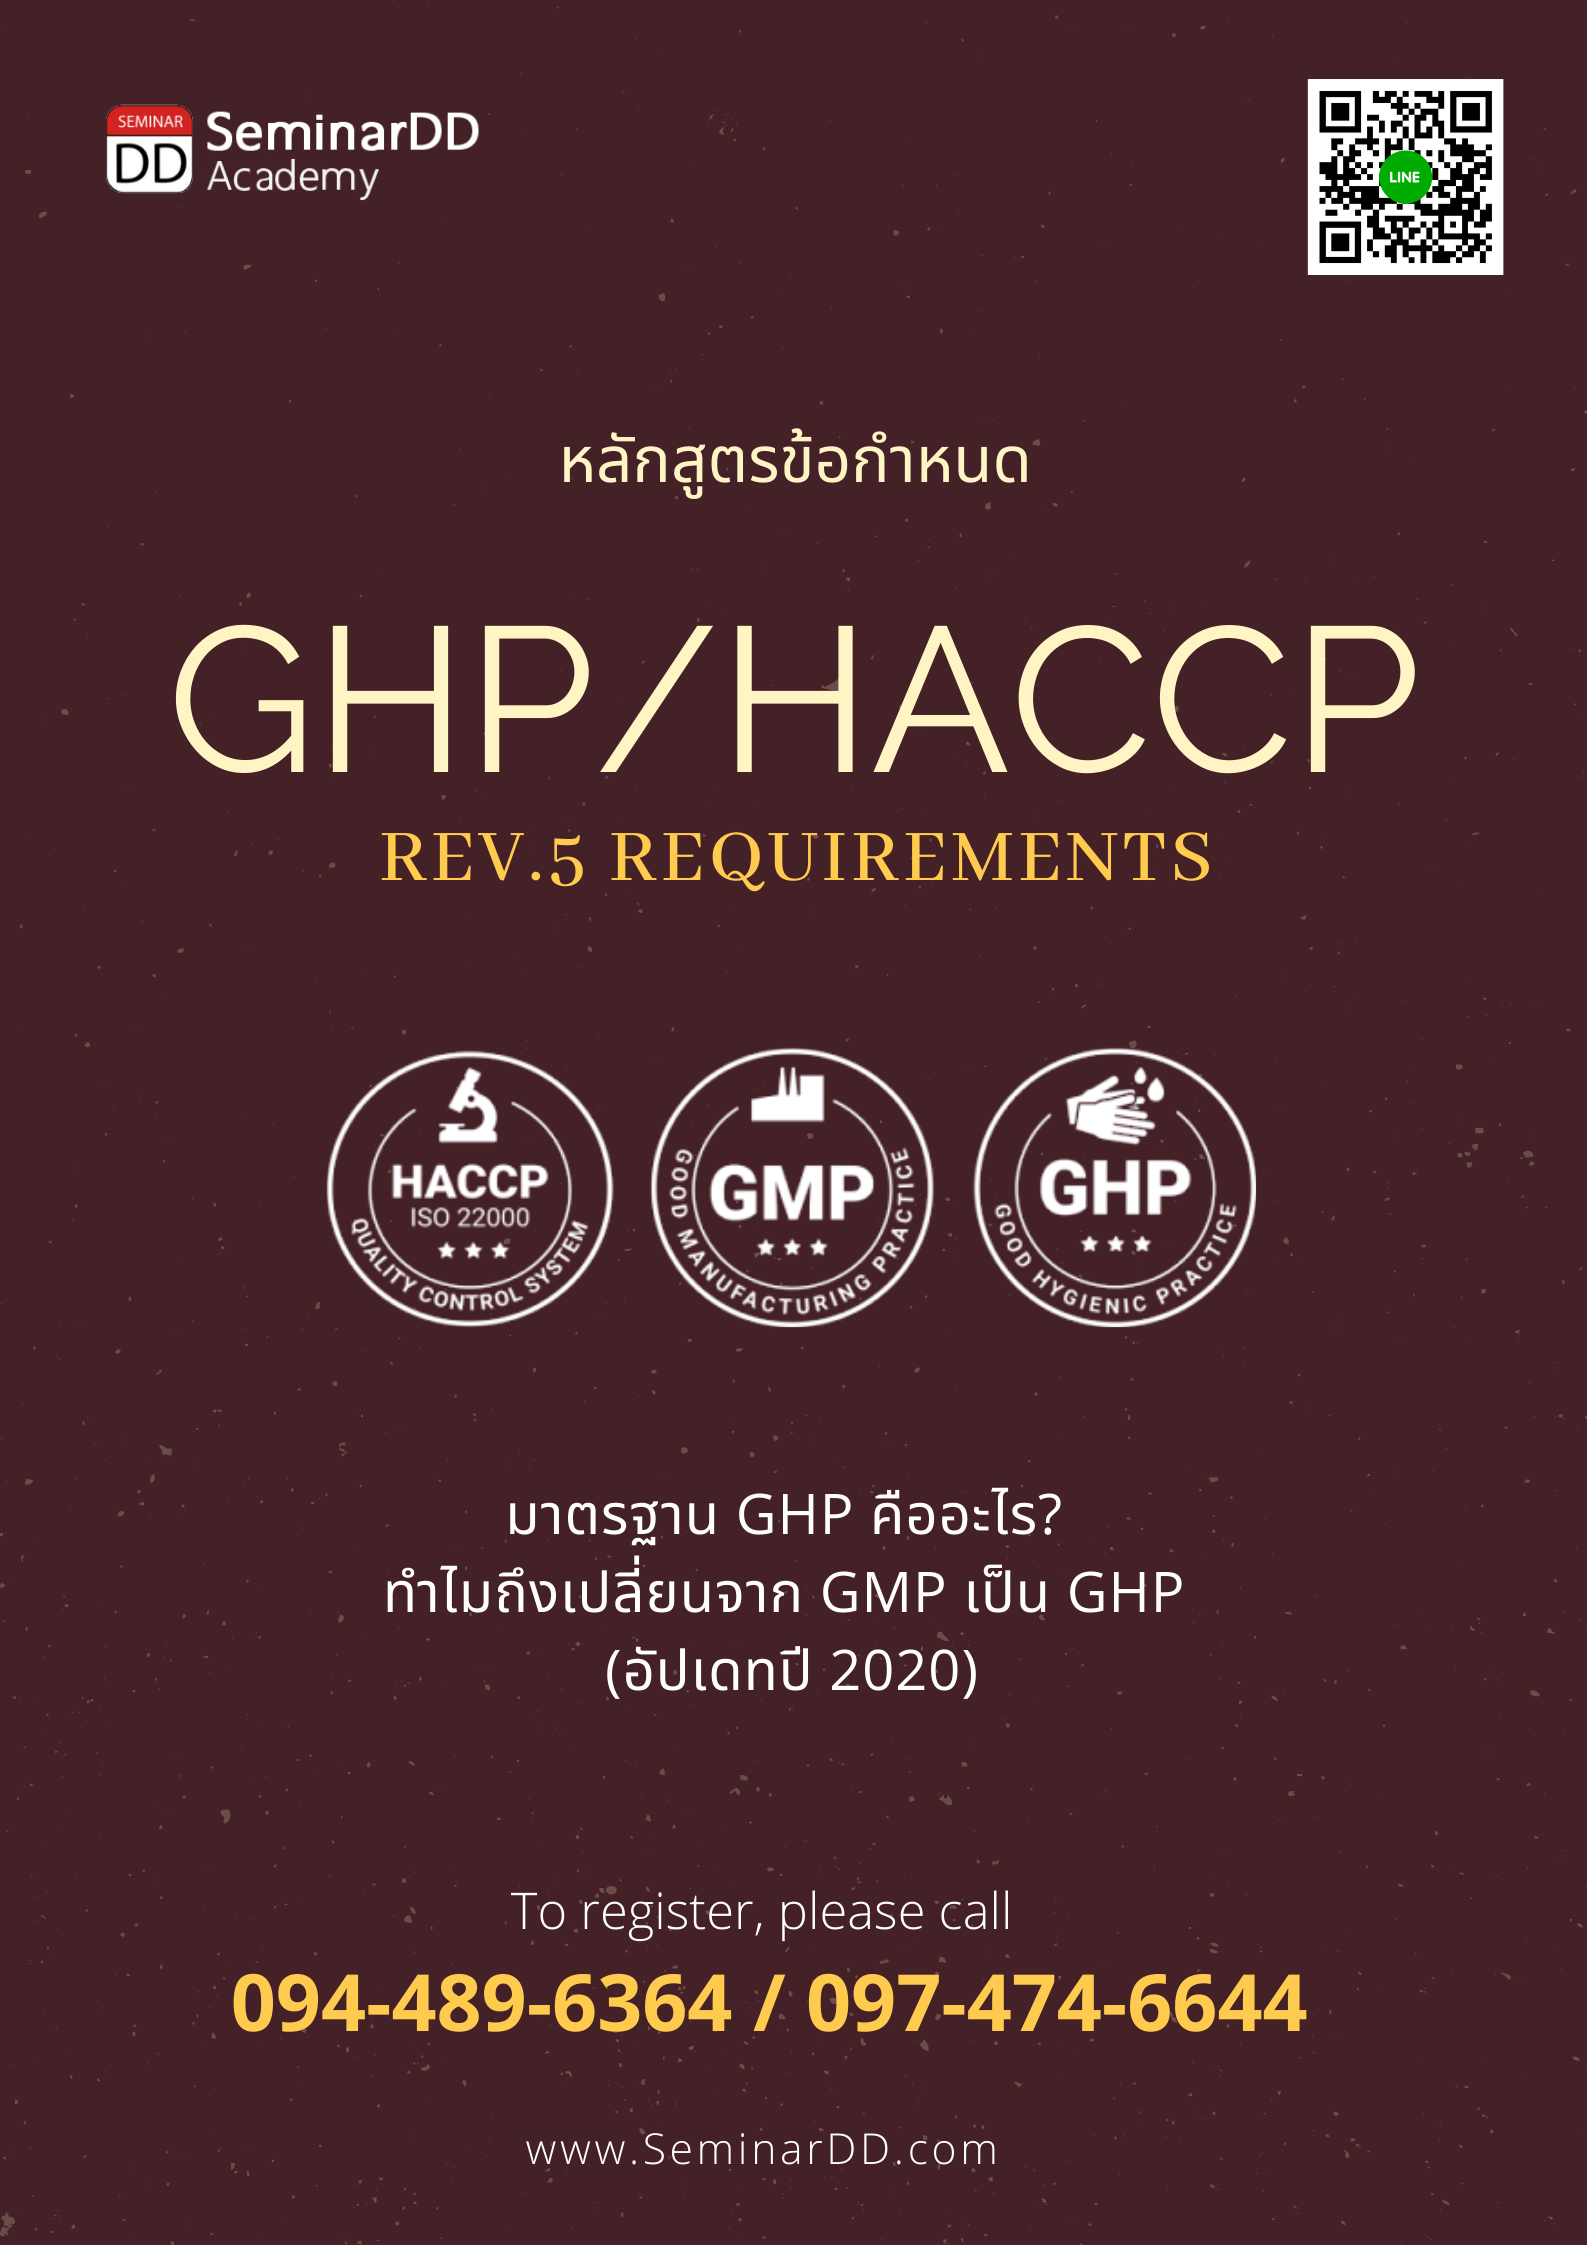 หลักสูตรอบรม ข้อกำหนด GHPs/HACCP (GMP->GHP/HACCP Version 5 Requirements)